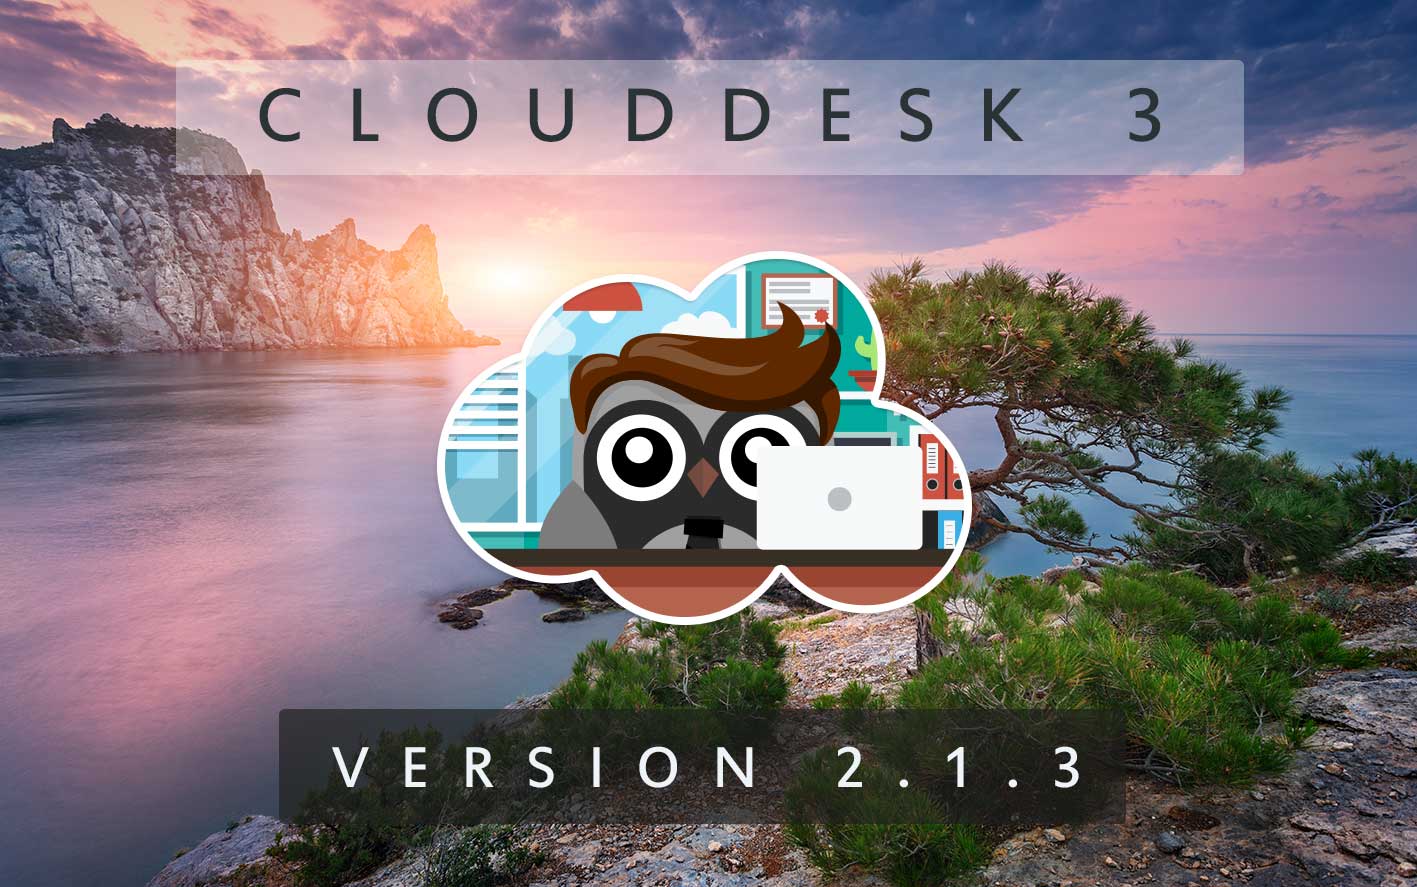 Cloud Desk 3 - Version 2.1.3